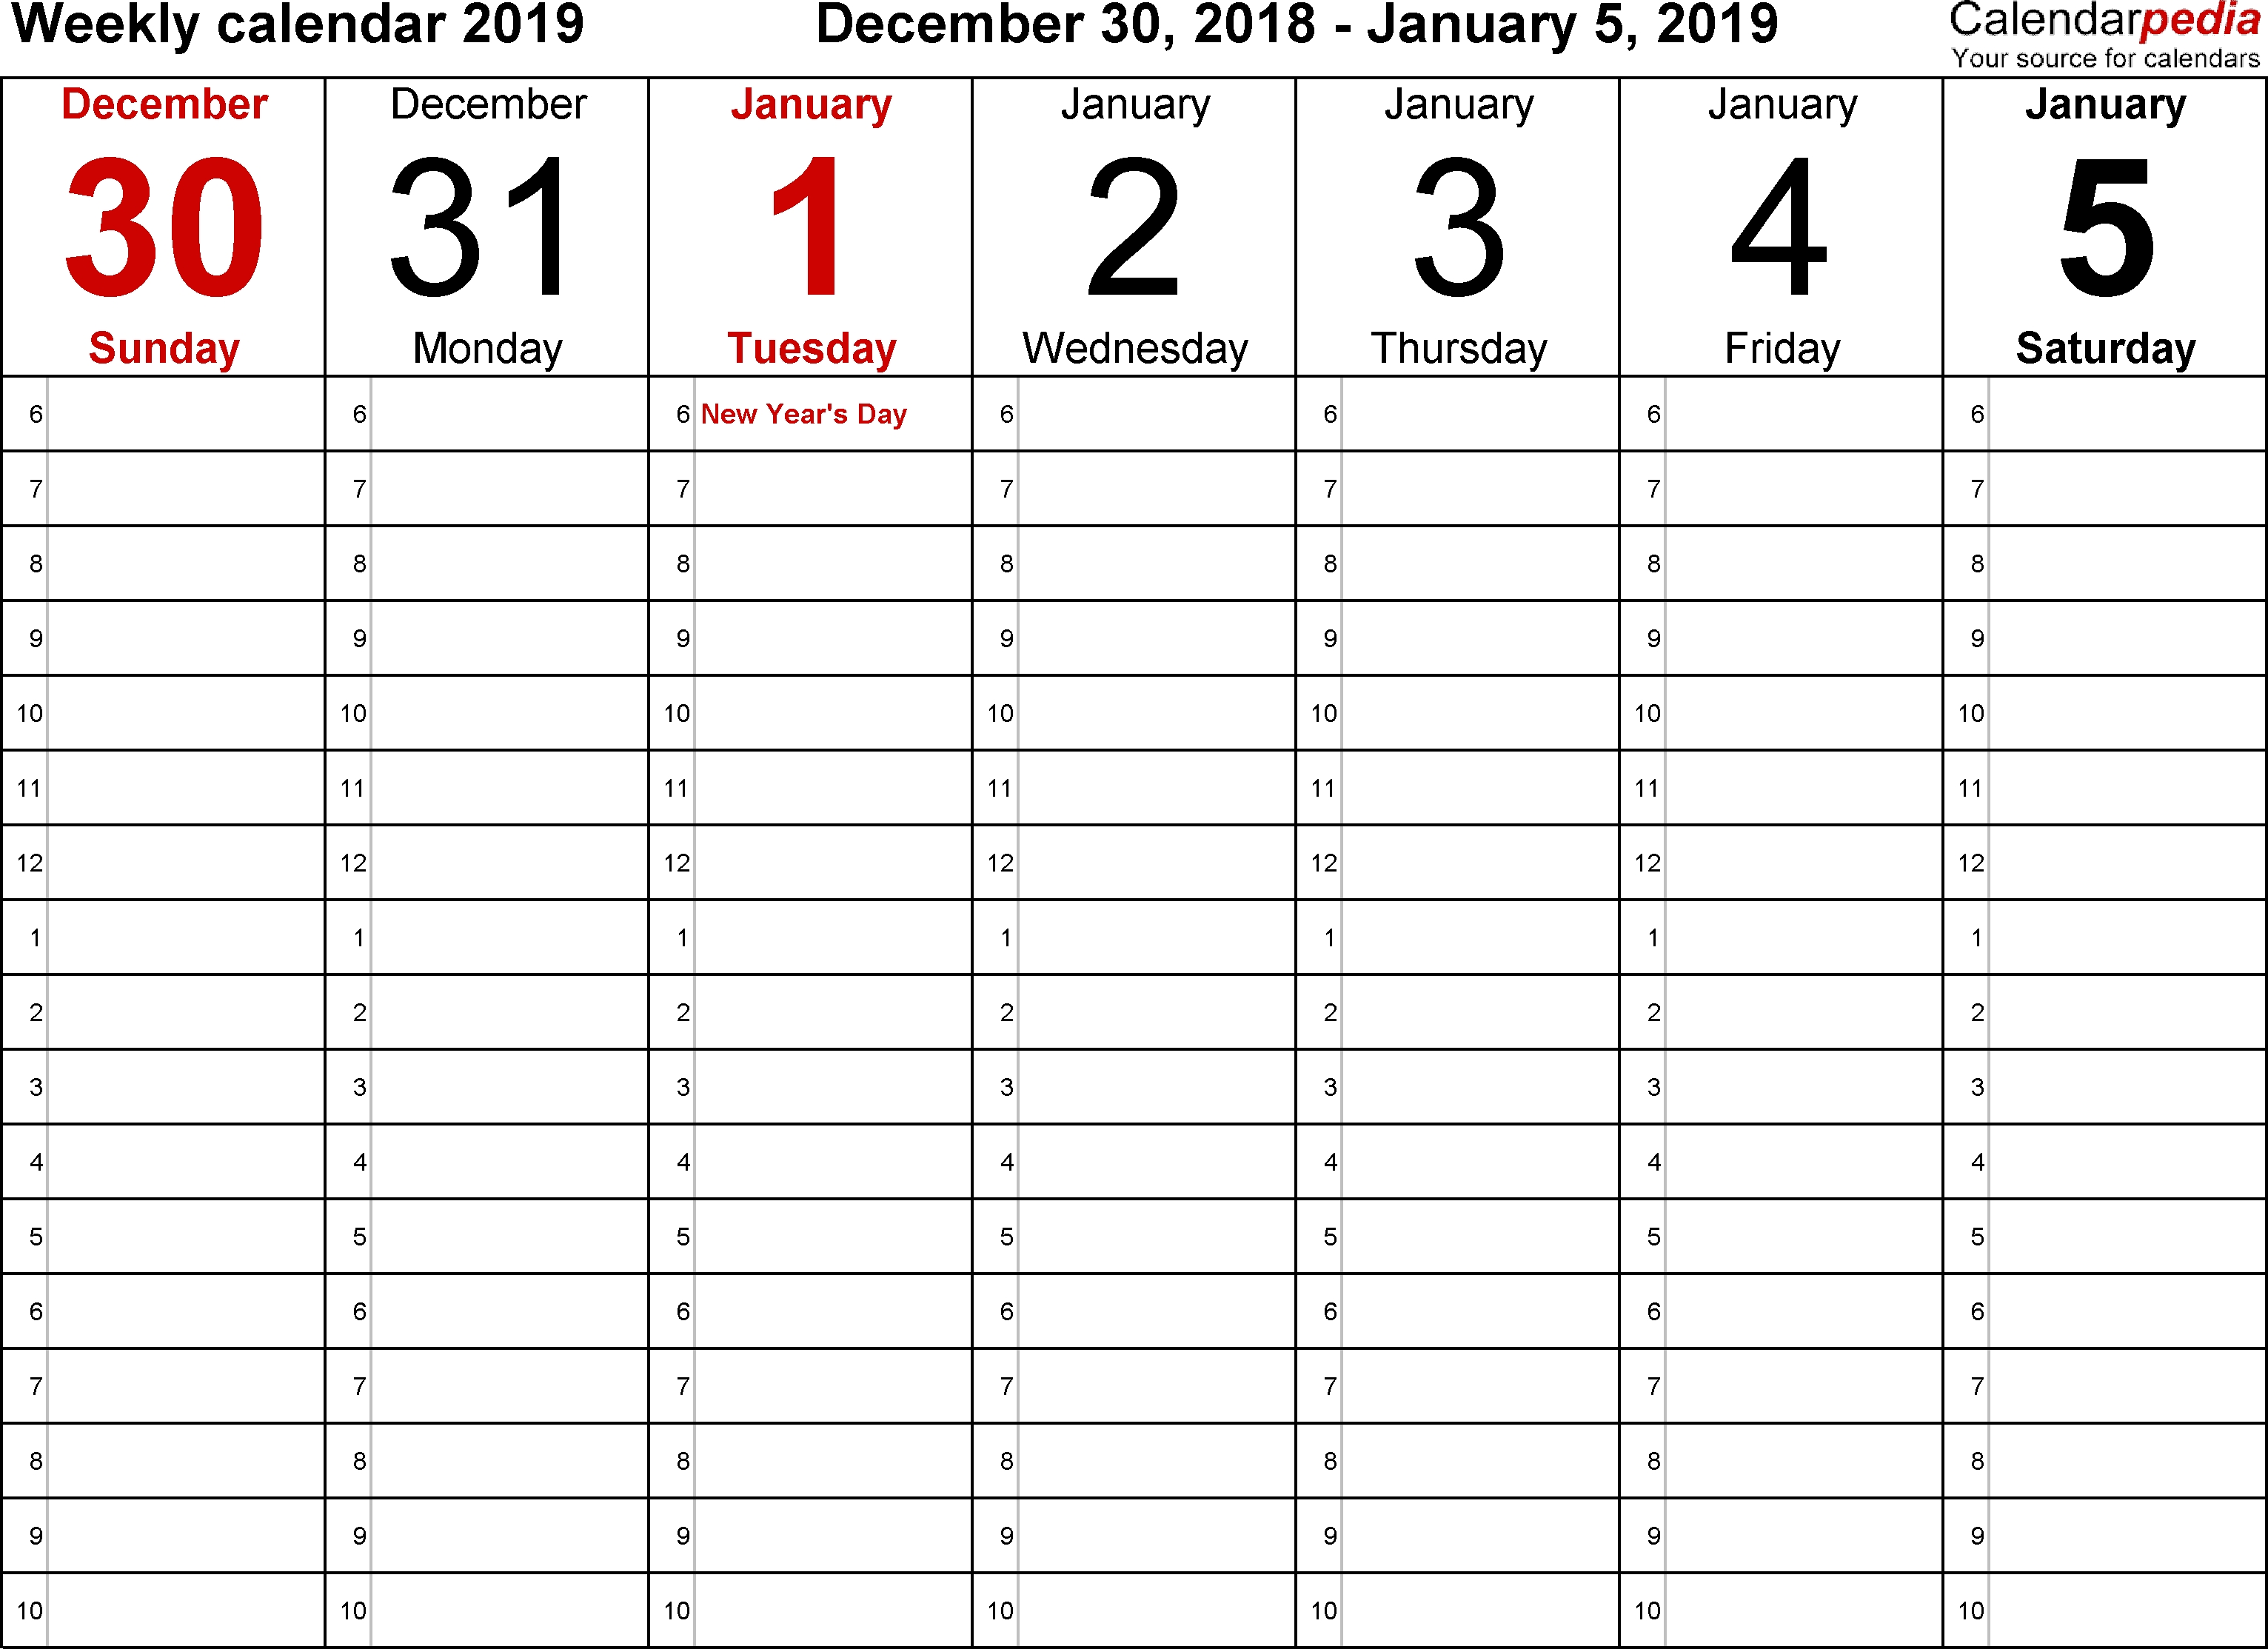 Weekly Calendar 2019 For Word - 12 Free Printable Templates with regard to Week By Week Calendar Printable